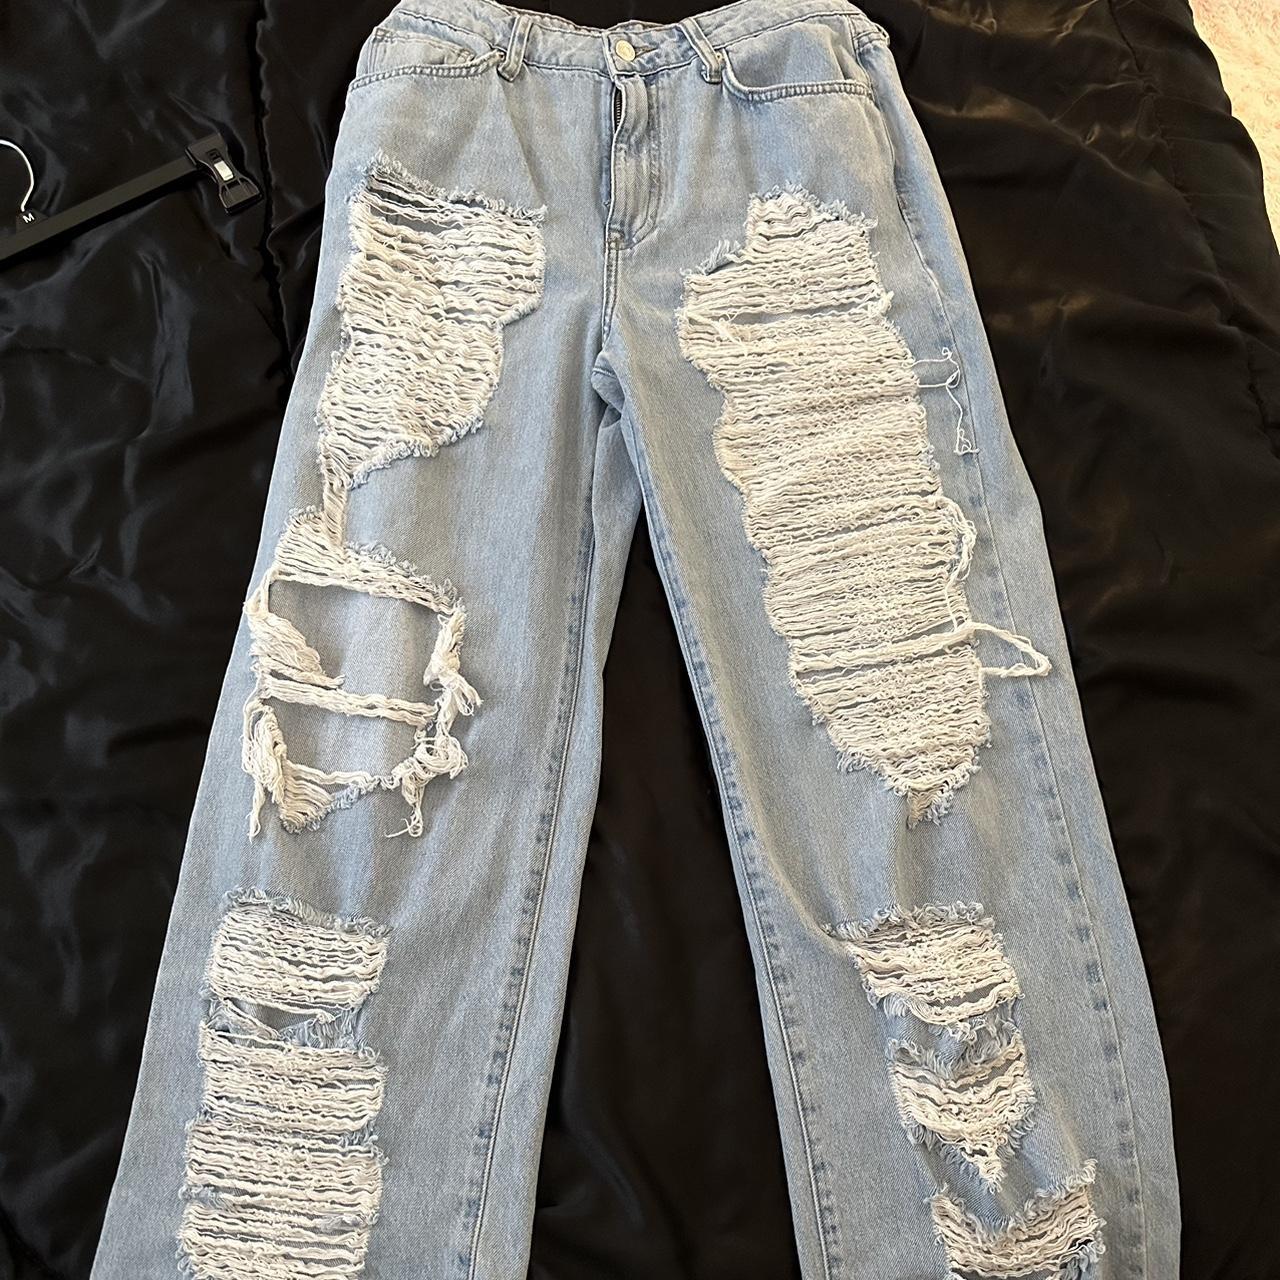 Forever 21 Men's ripped skinny jeans 31 - Depop